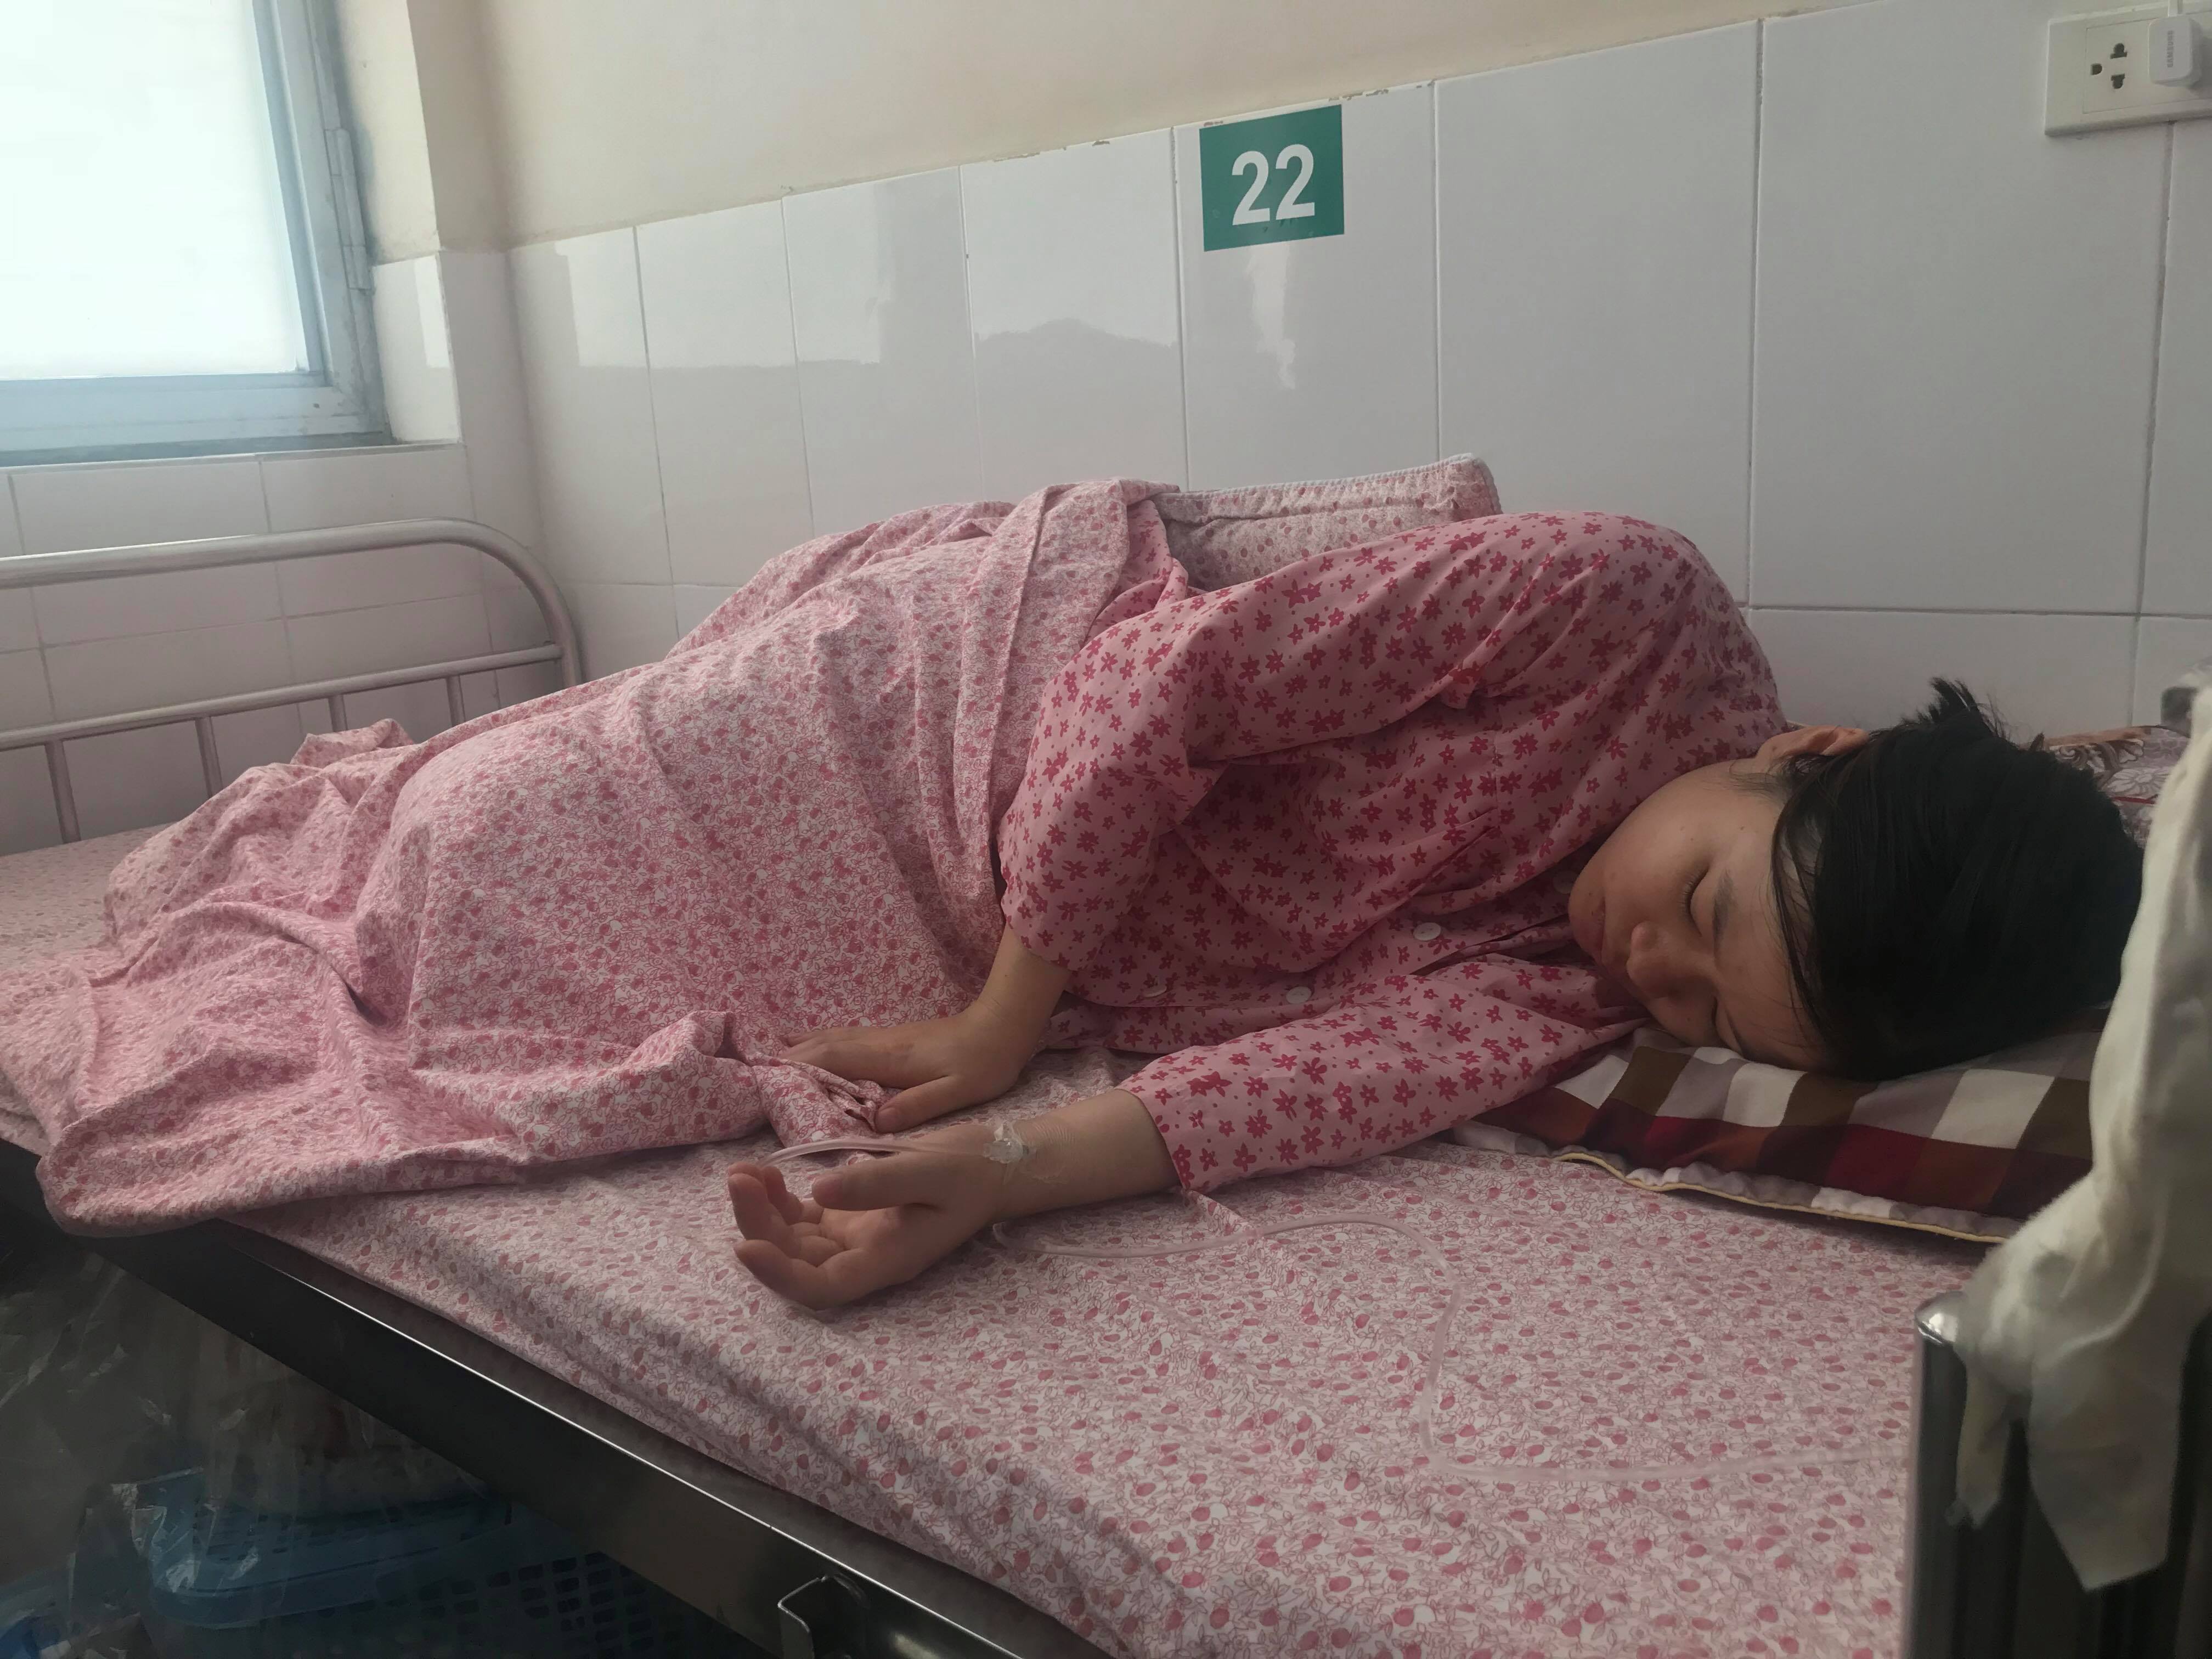 Chị Khuyên đang được theo dõi tại Bệnh viện phụ sản Hà Nội